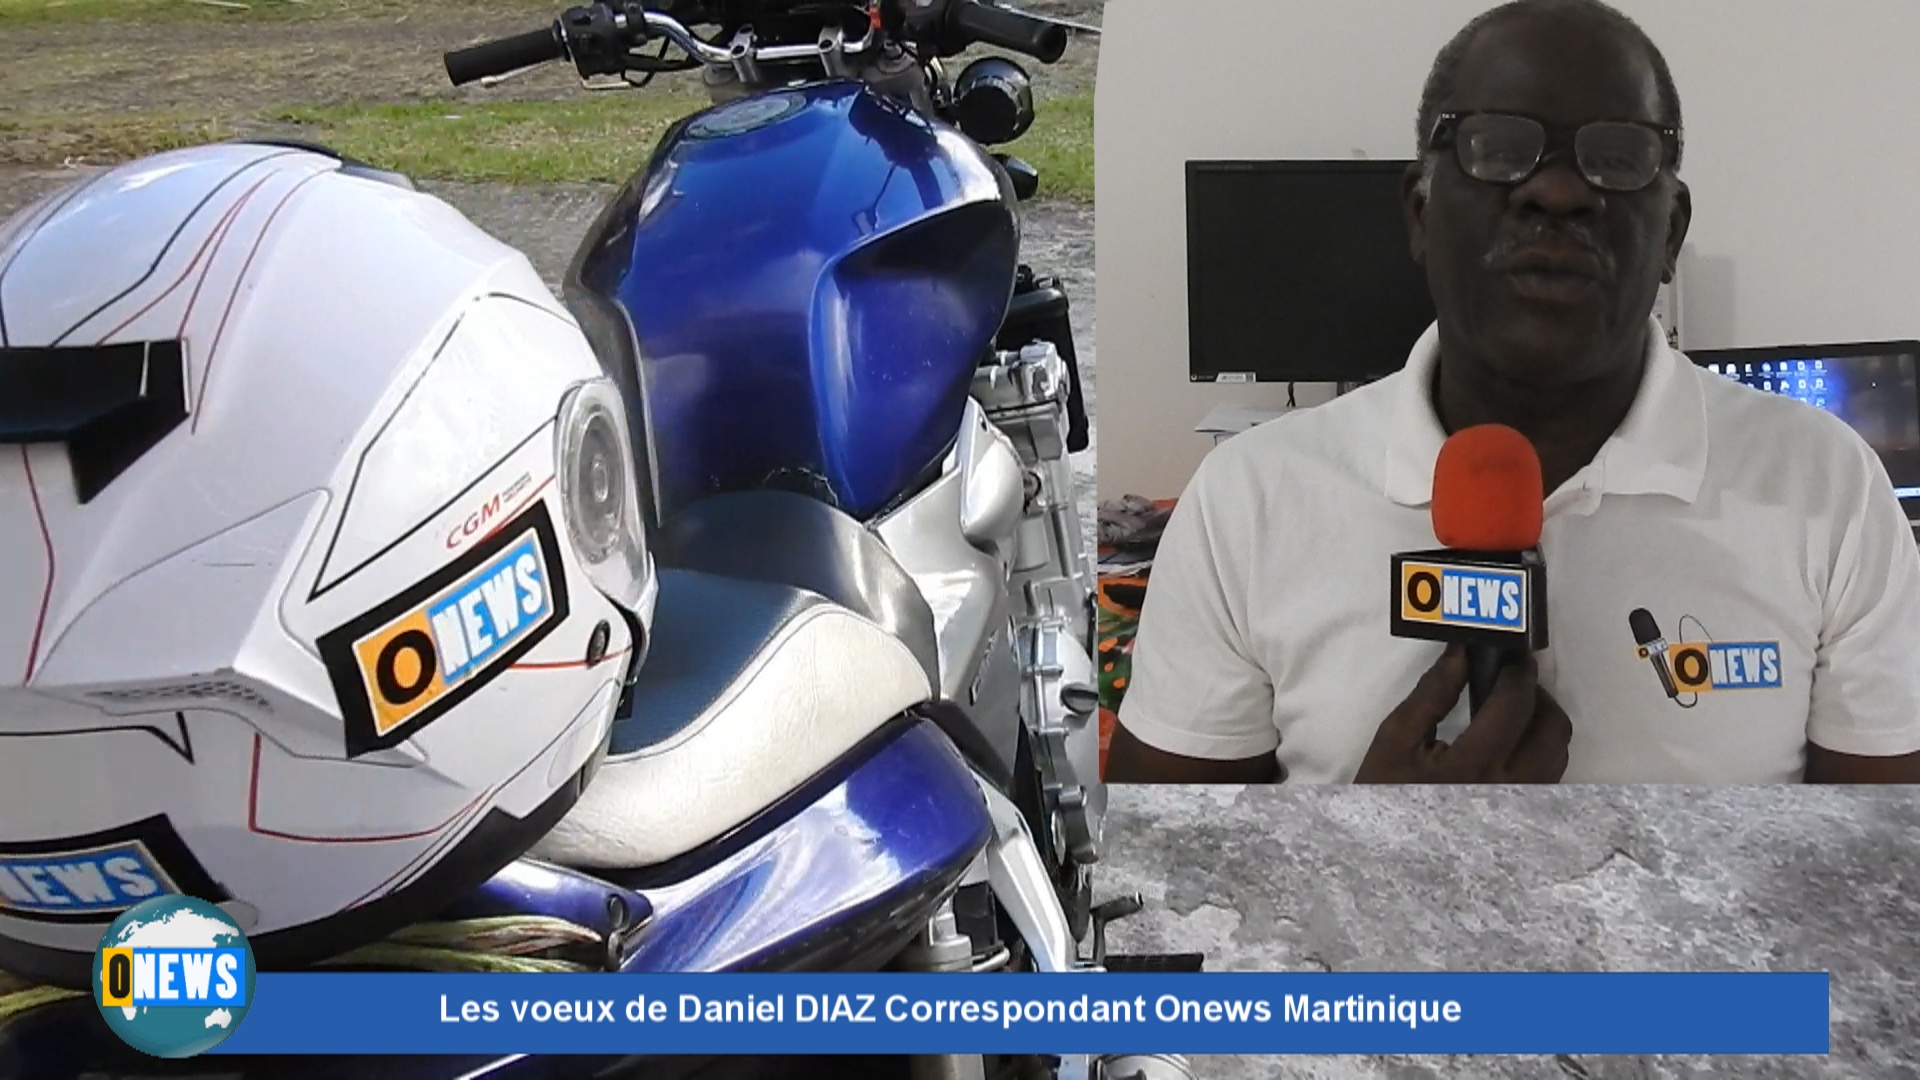 [Vidéo] Onews Martinique. Les Voeux de Daniel DIAZ Correspondant Outremernews Martinique